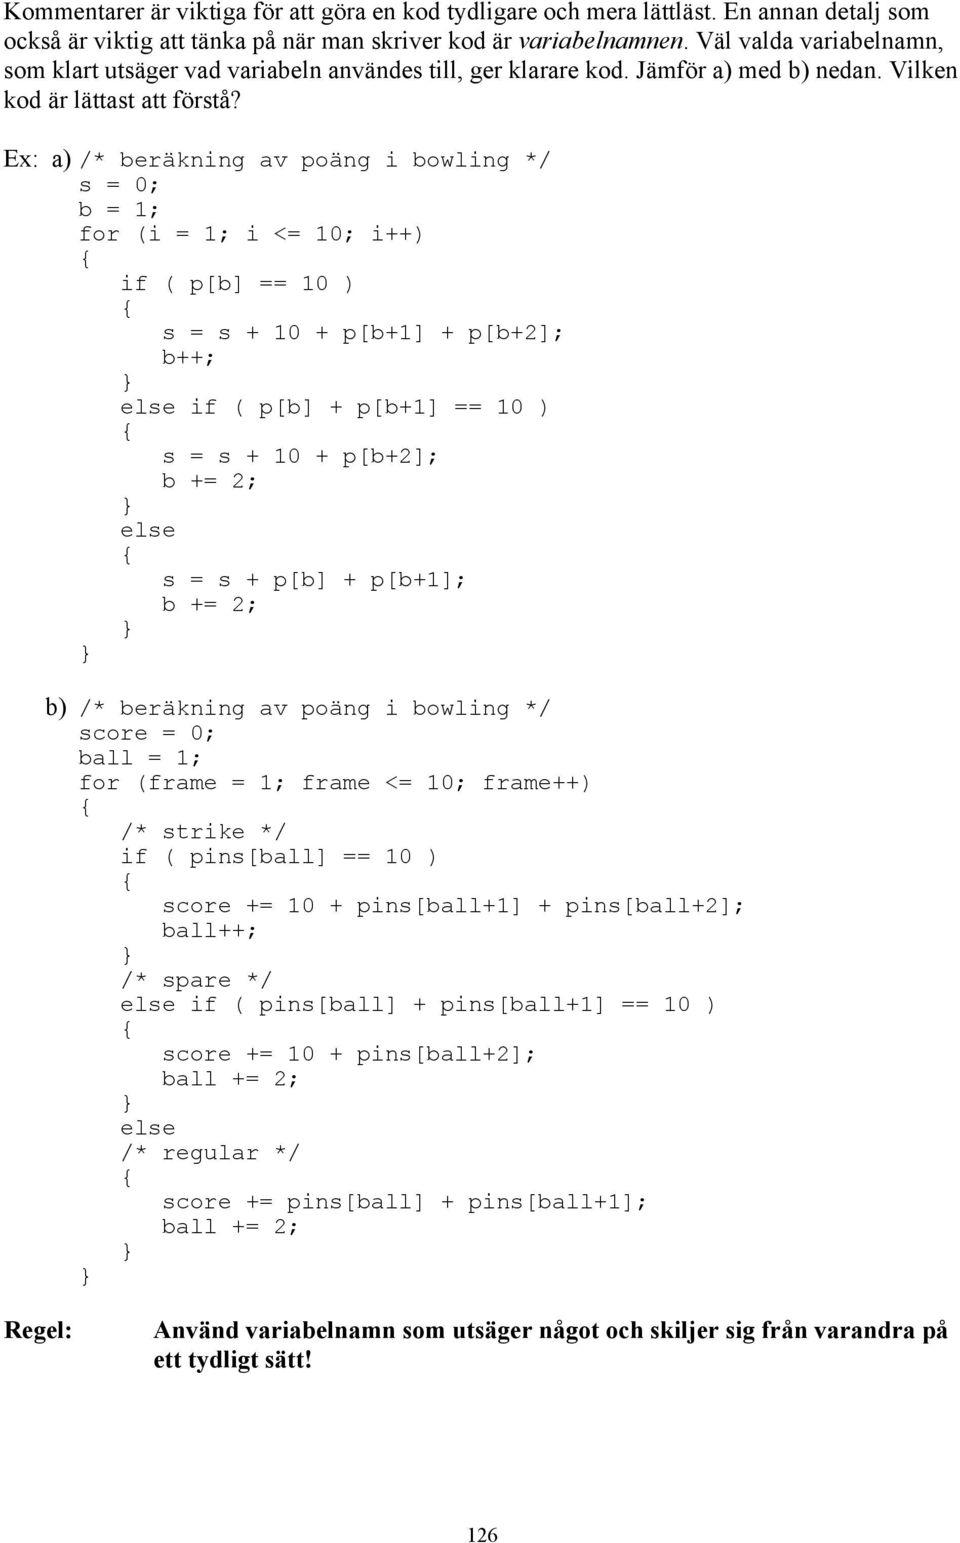 a) /* beräkning av poäng i bowling */ s = 0; b = 1; for (i = 1; i <= 10; i++) if ( p[b] == 10 ) s = s + 10 + p[b+1] + p[b+2]; b++; if ( p[b] + p[b+1] == 10 ) s = s + 10 + p[b+2]; b += 2; s = s + p[b]